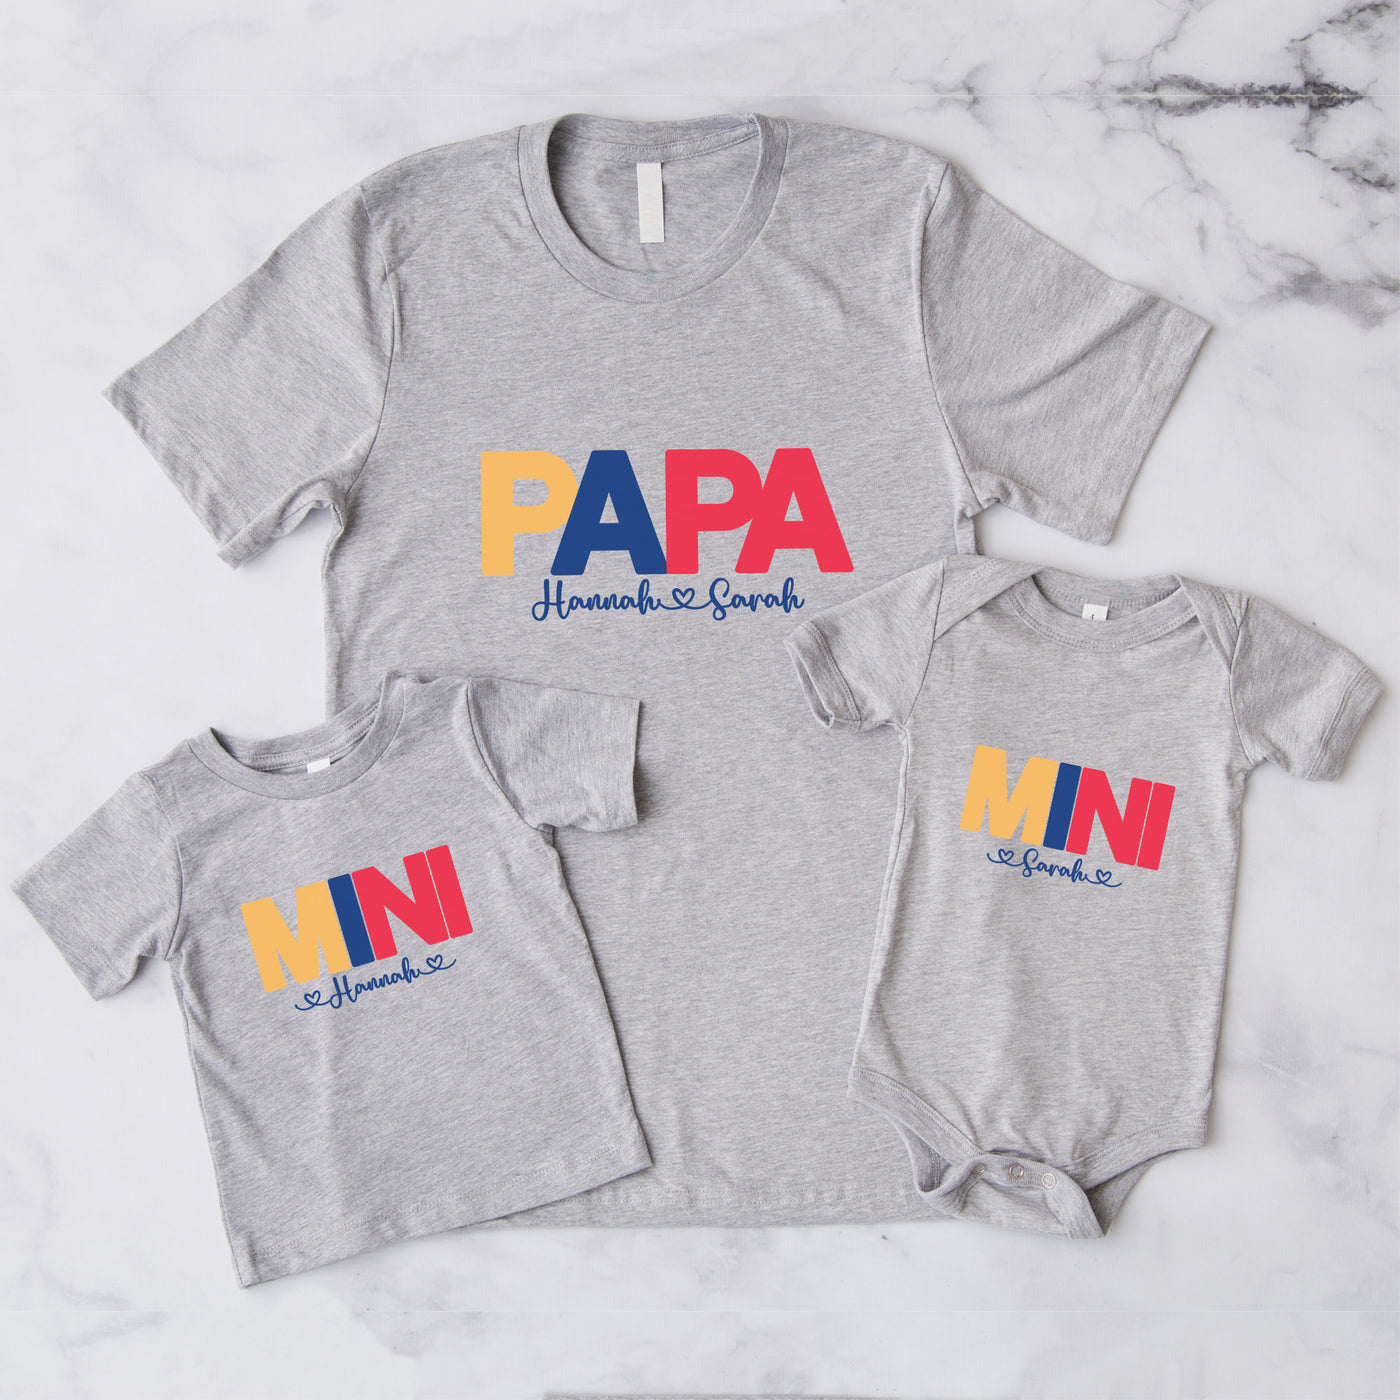 Papa Mama Mini Shirts mit Wunschnamen Vater Sohn Partnerlook Mutter Tochter Outfit Babybody bedruckt Schwangerschaft Ankündigung Unisex